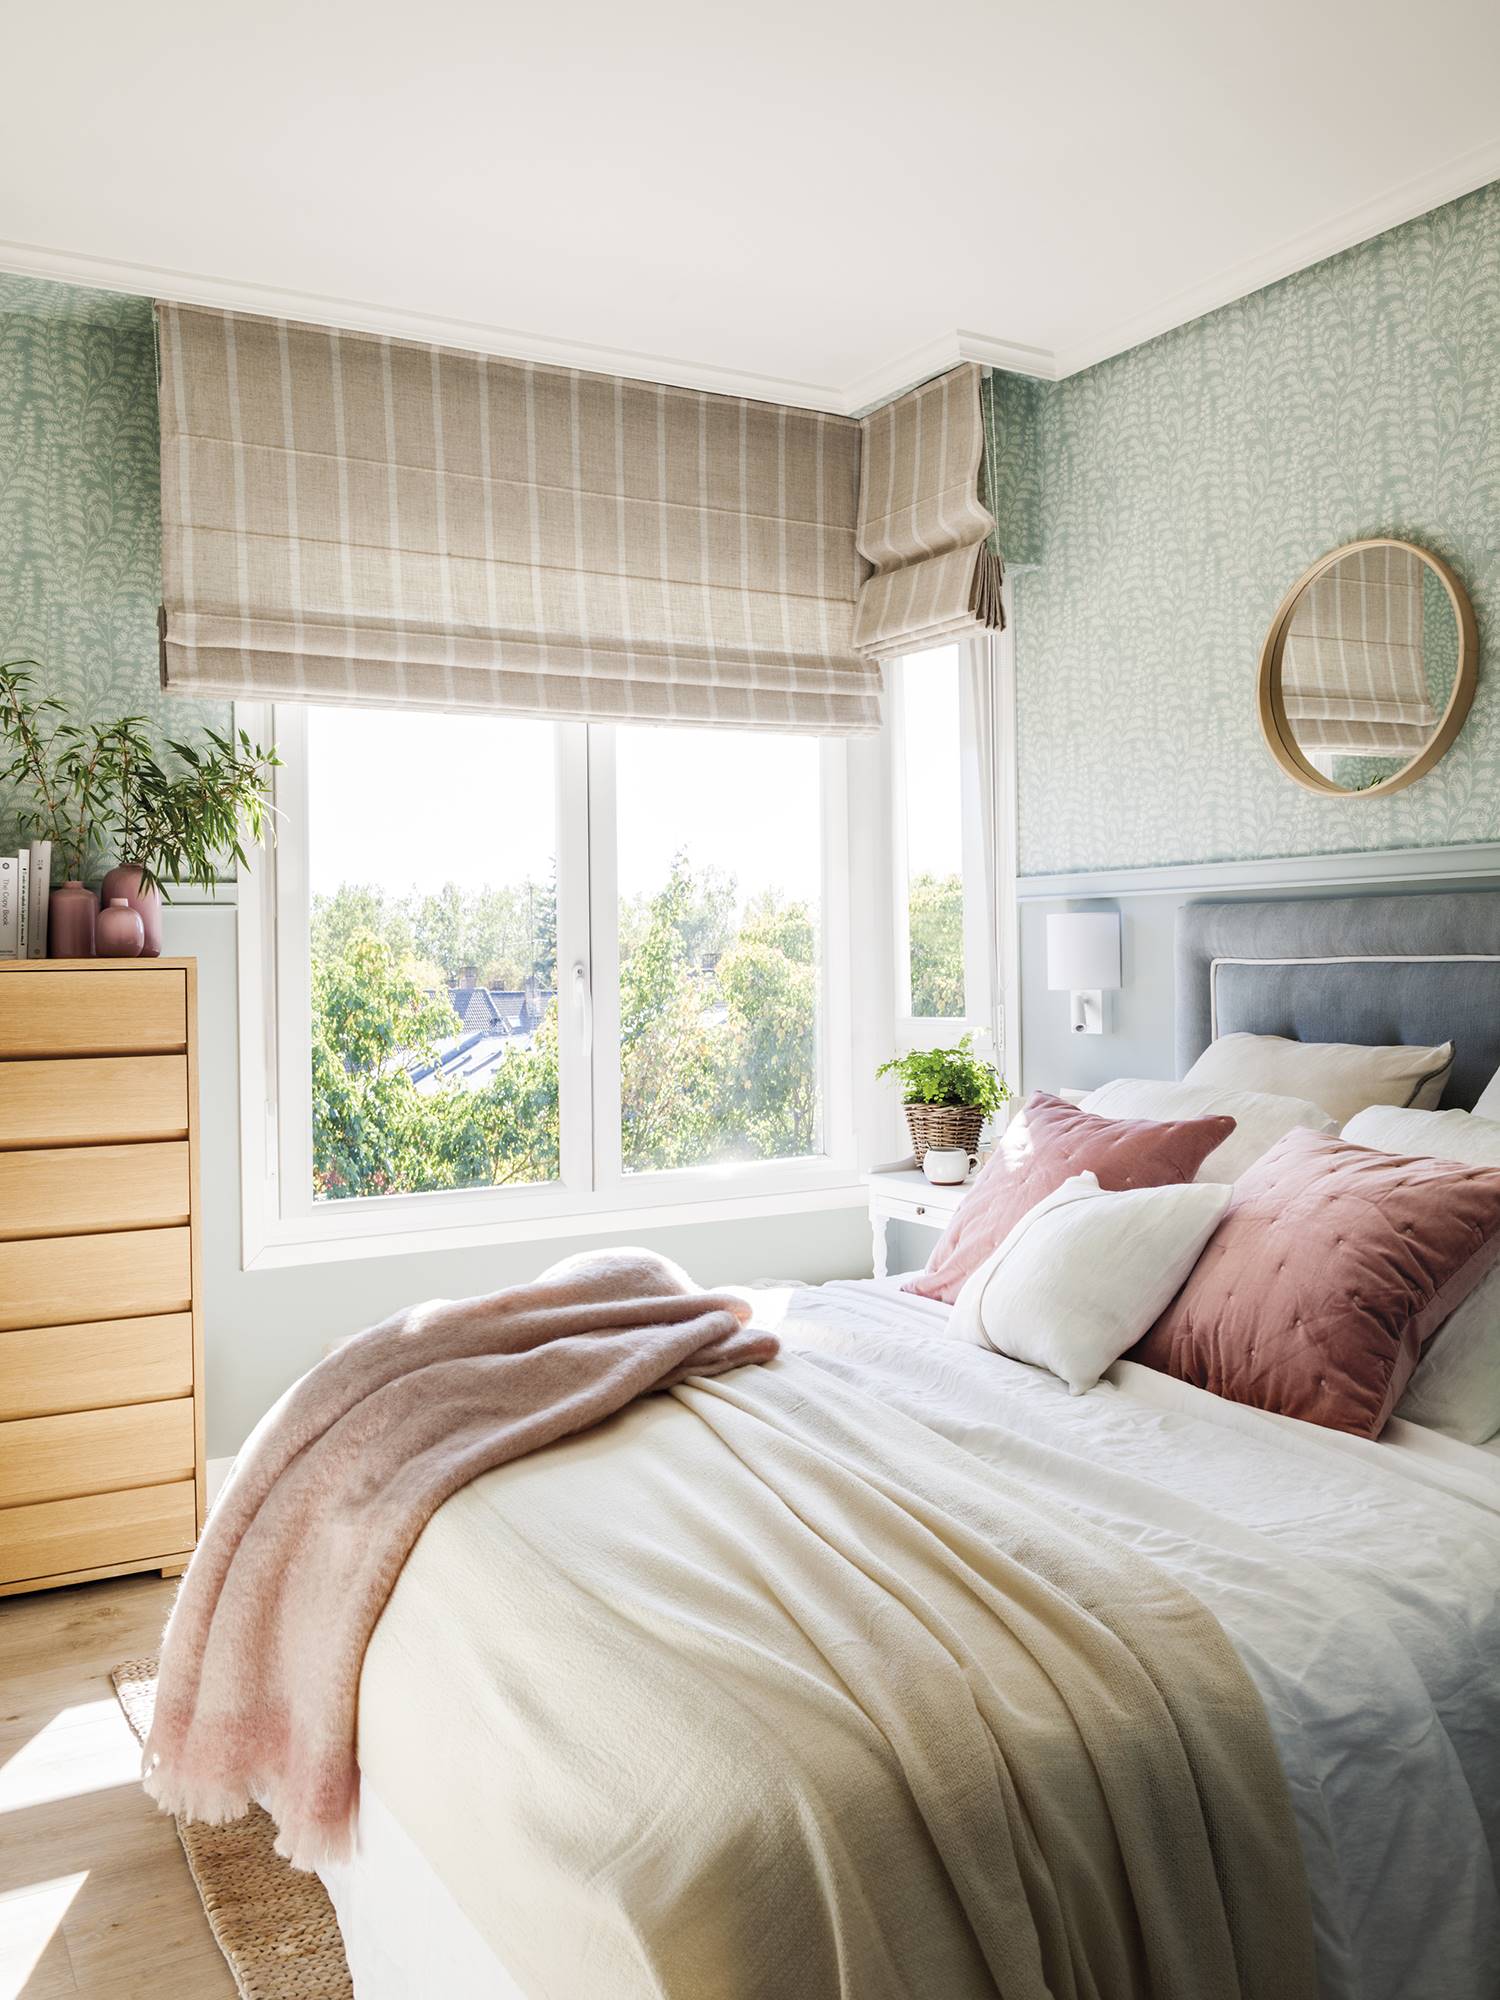 Dormitorio con cajonera alta de madera, arrimadero y papel pintado